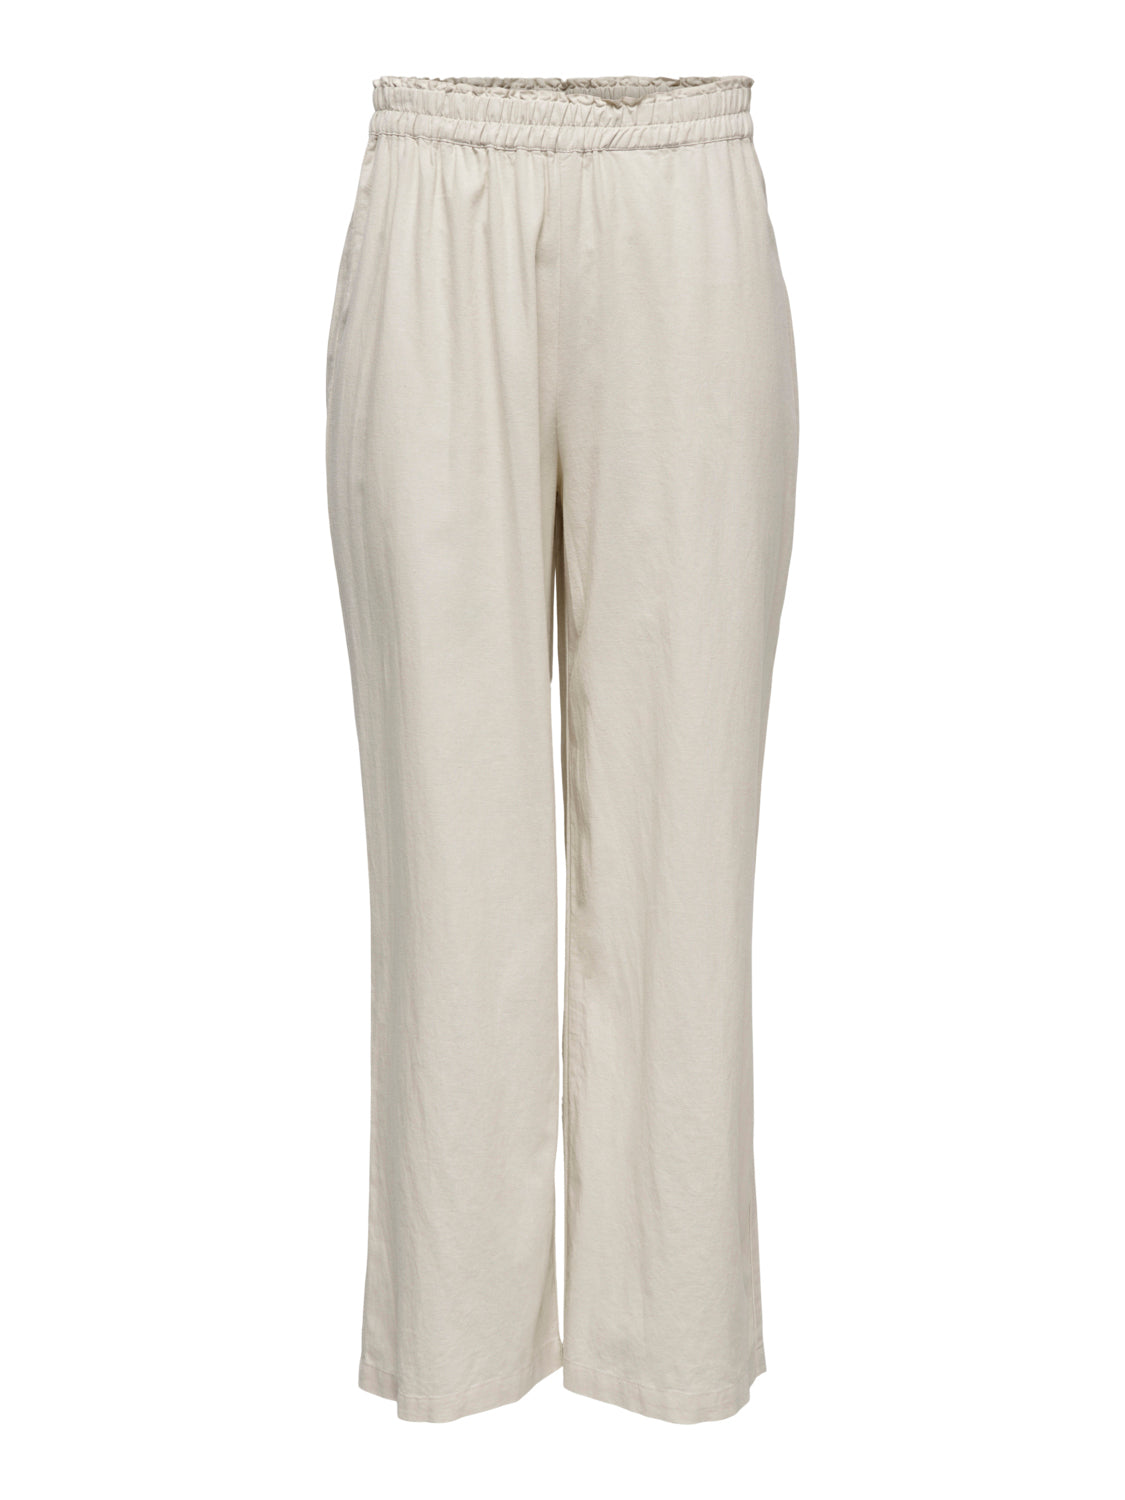 High Waisted Linen Blend Trouser (Long)